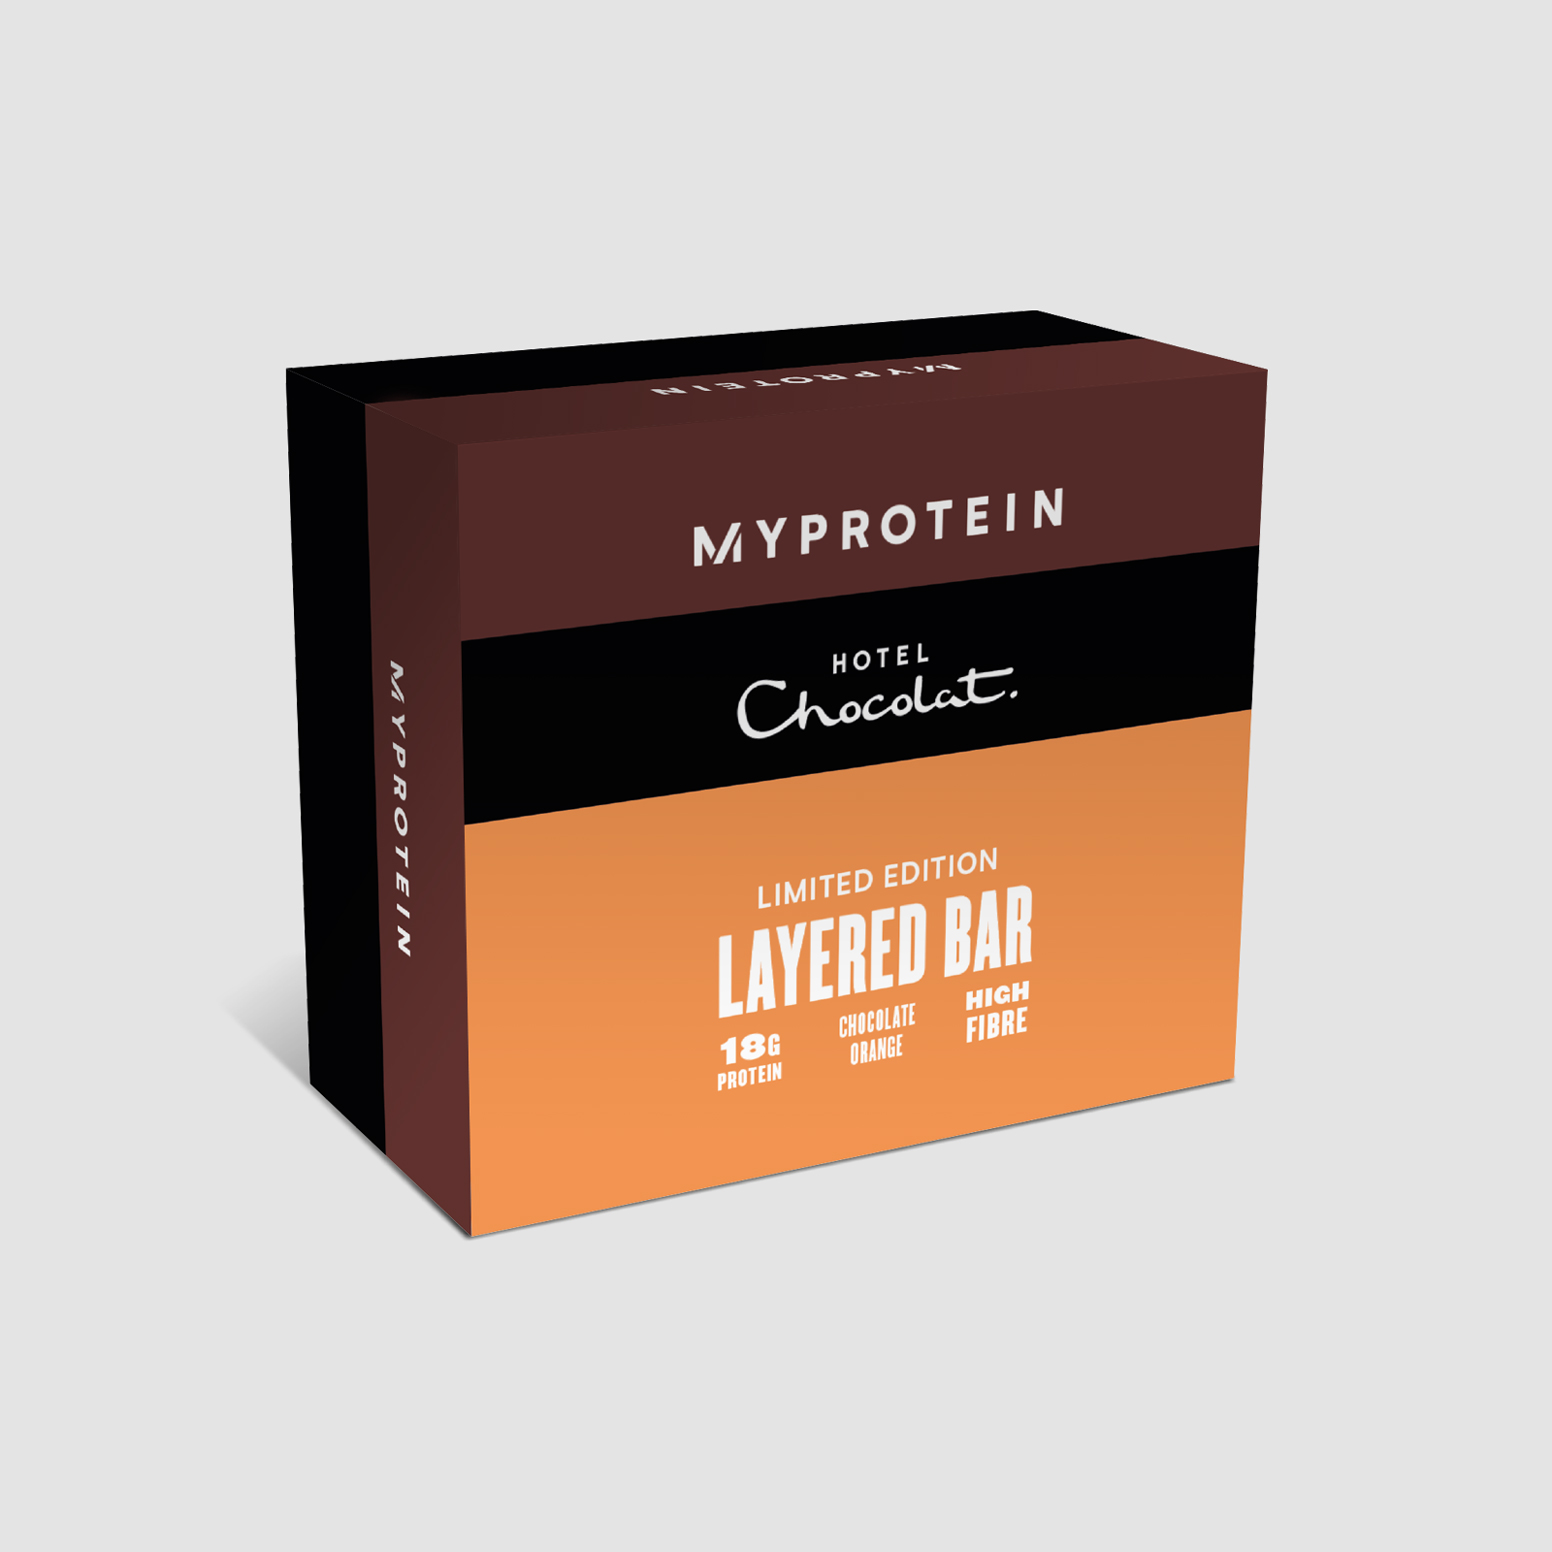 Myprotein X Hotel Chocolat Chocolate Orange Layered Bars